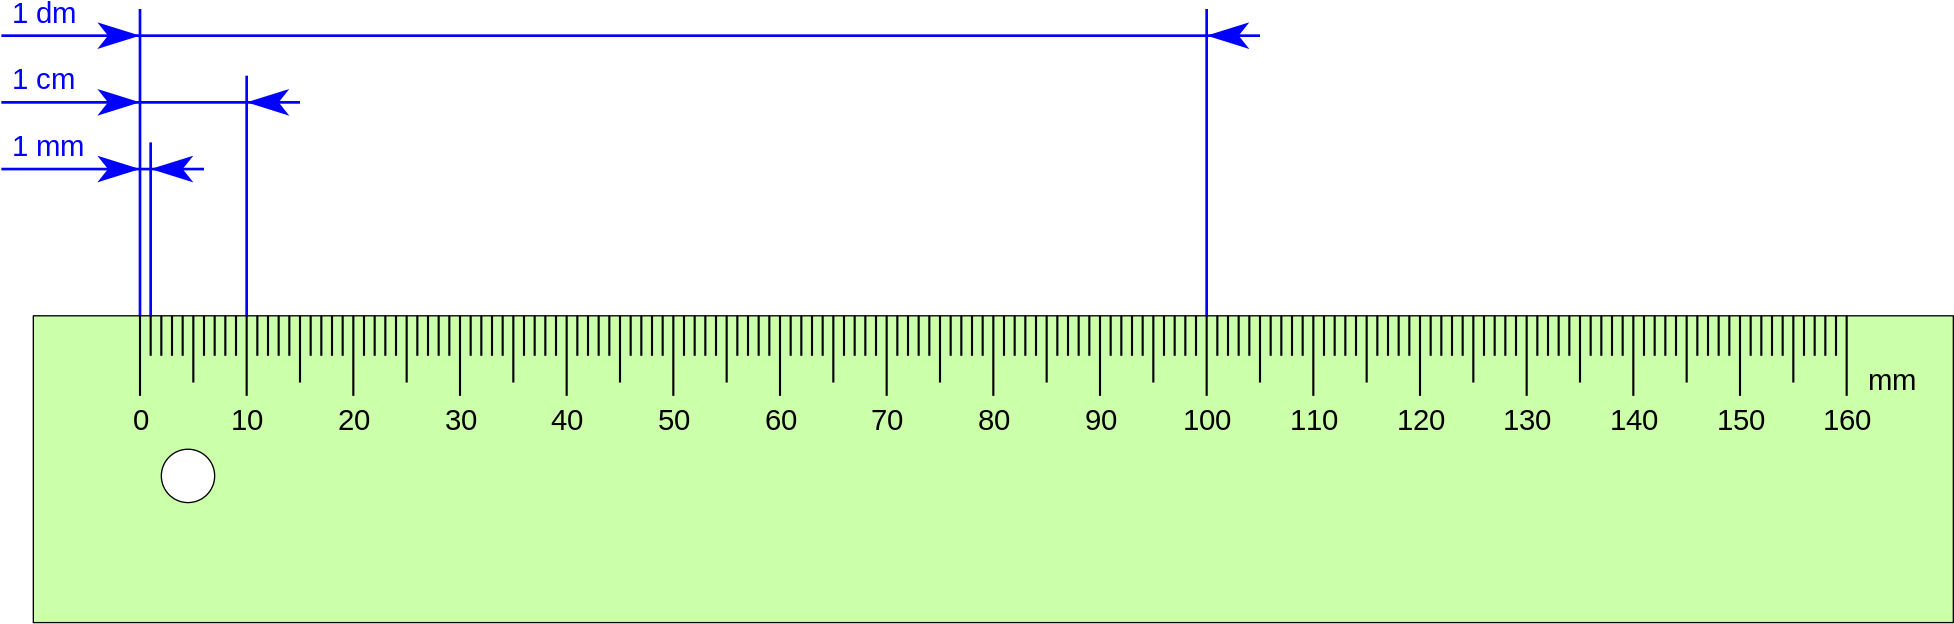 Сантиметр земли сколько лет